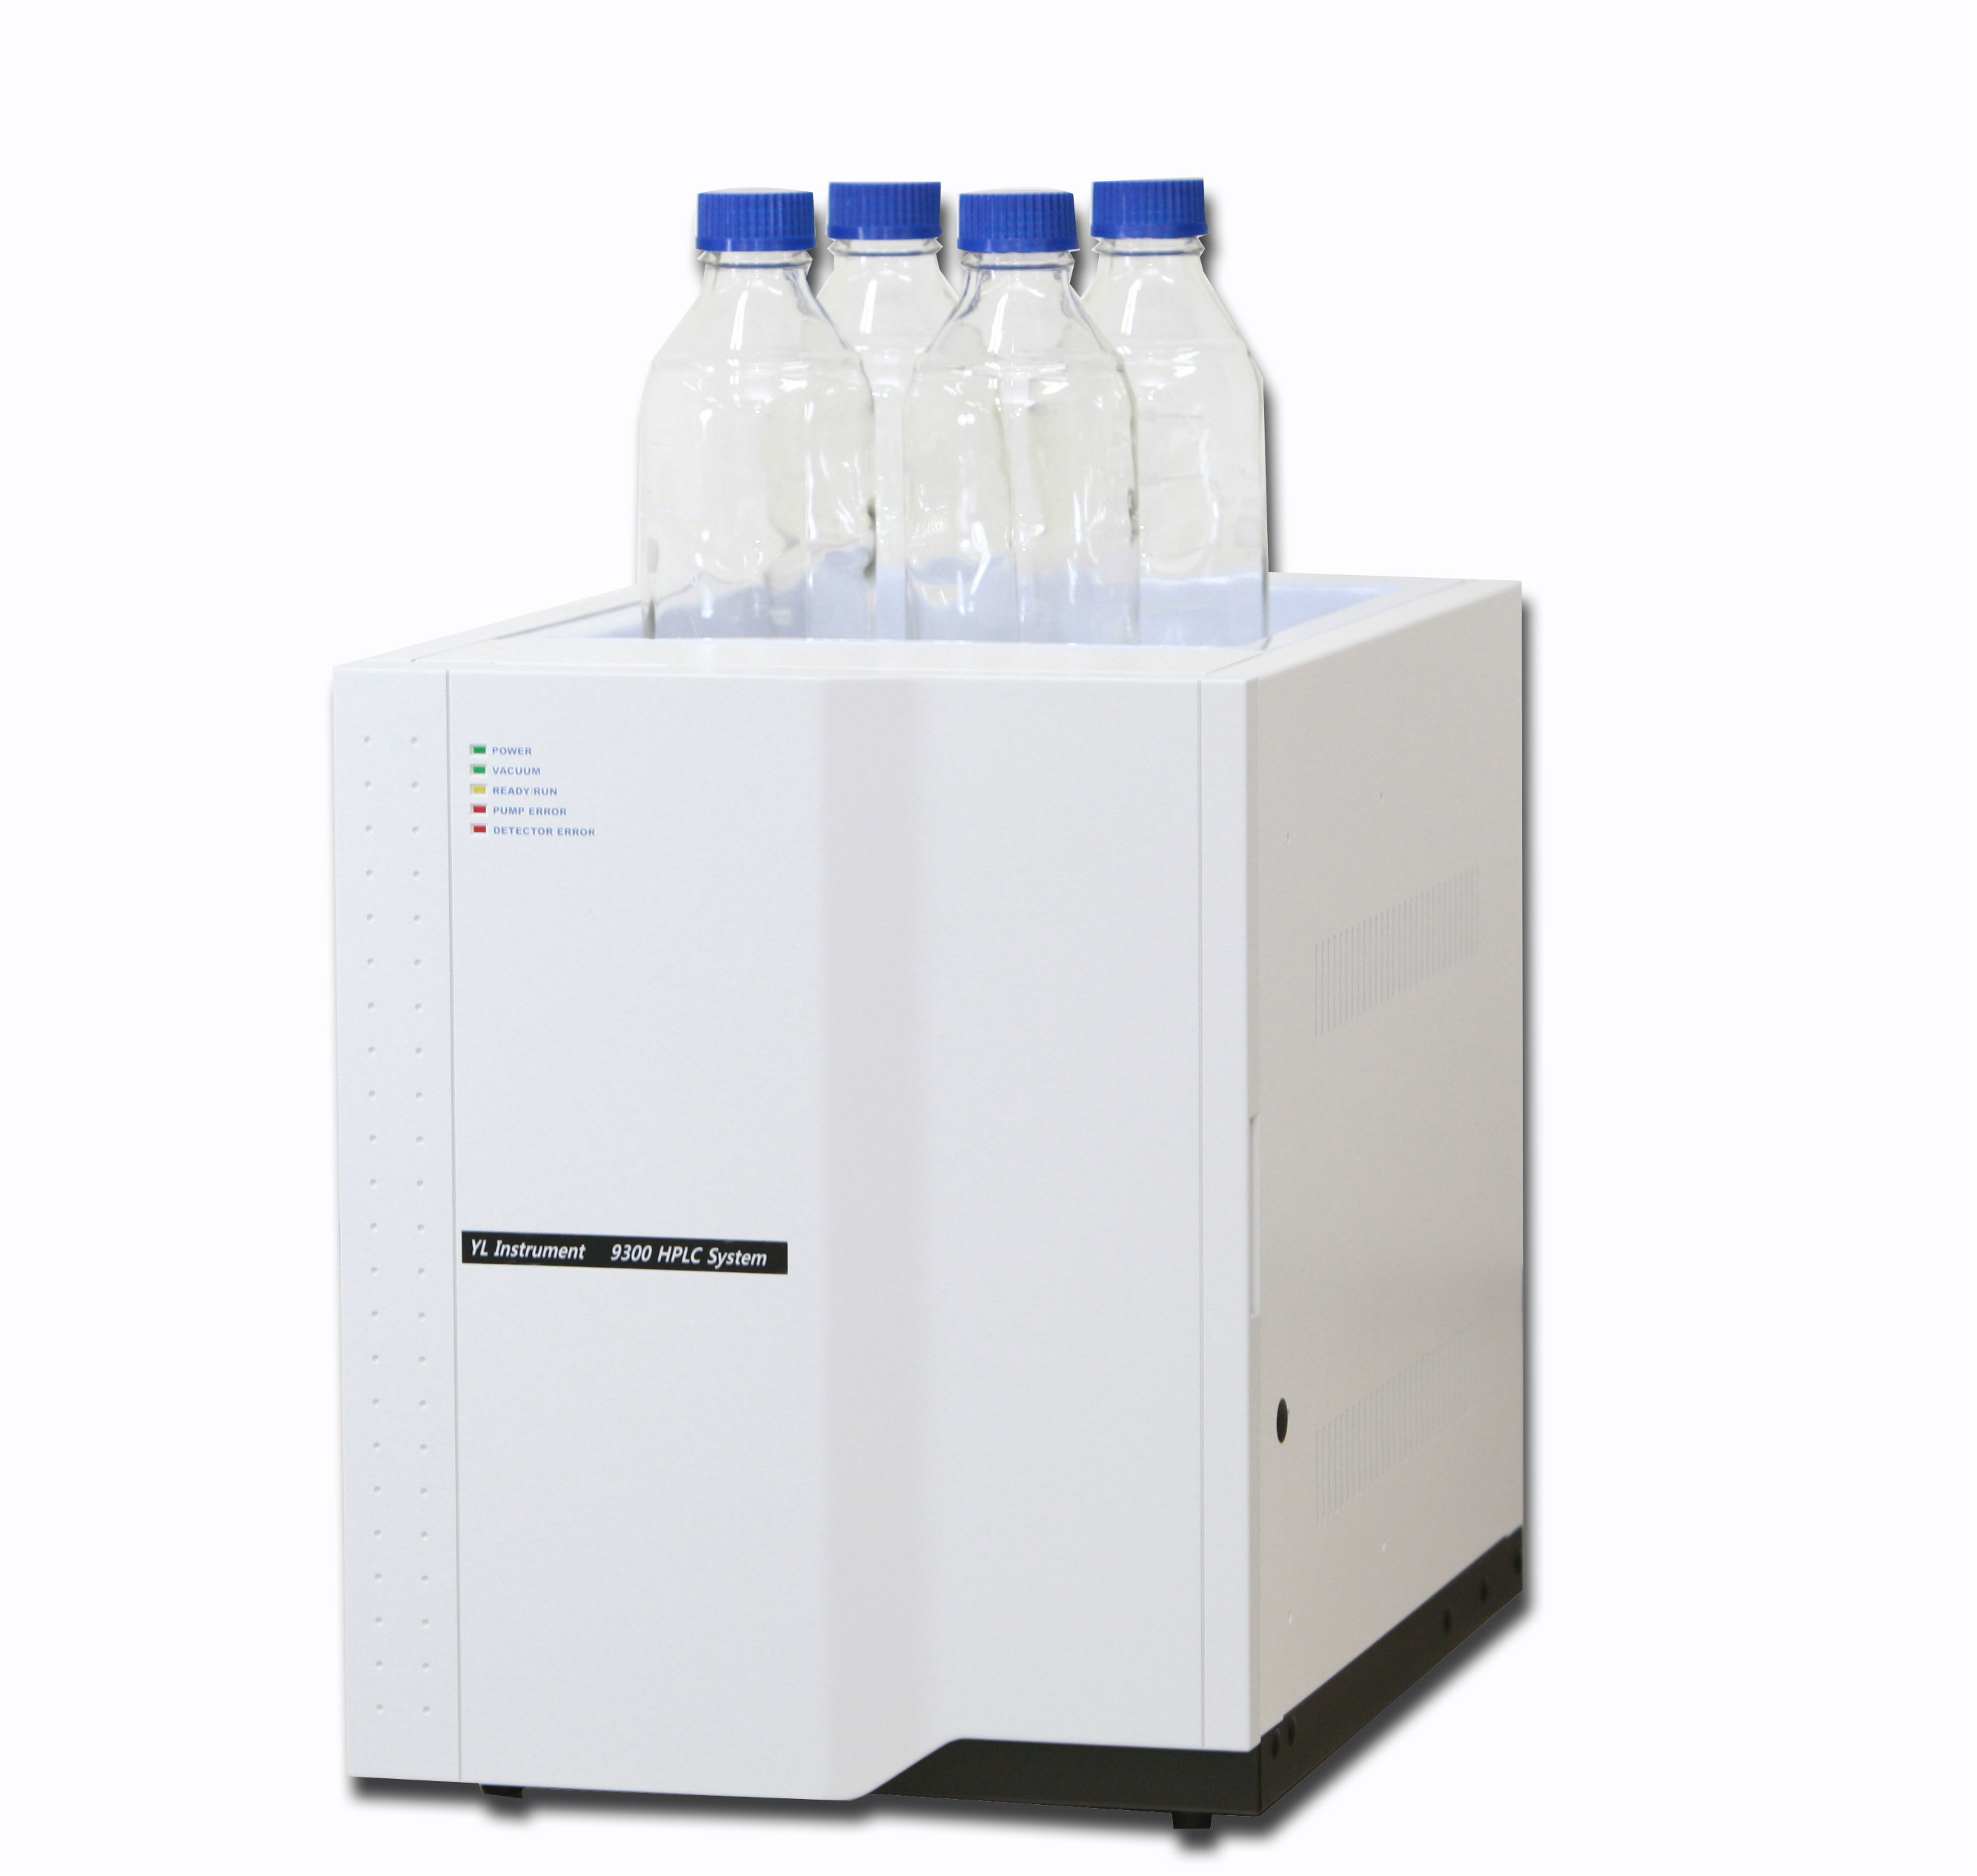 漾林YL9300 HPLC(集成HPLC)液相色谱仪